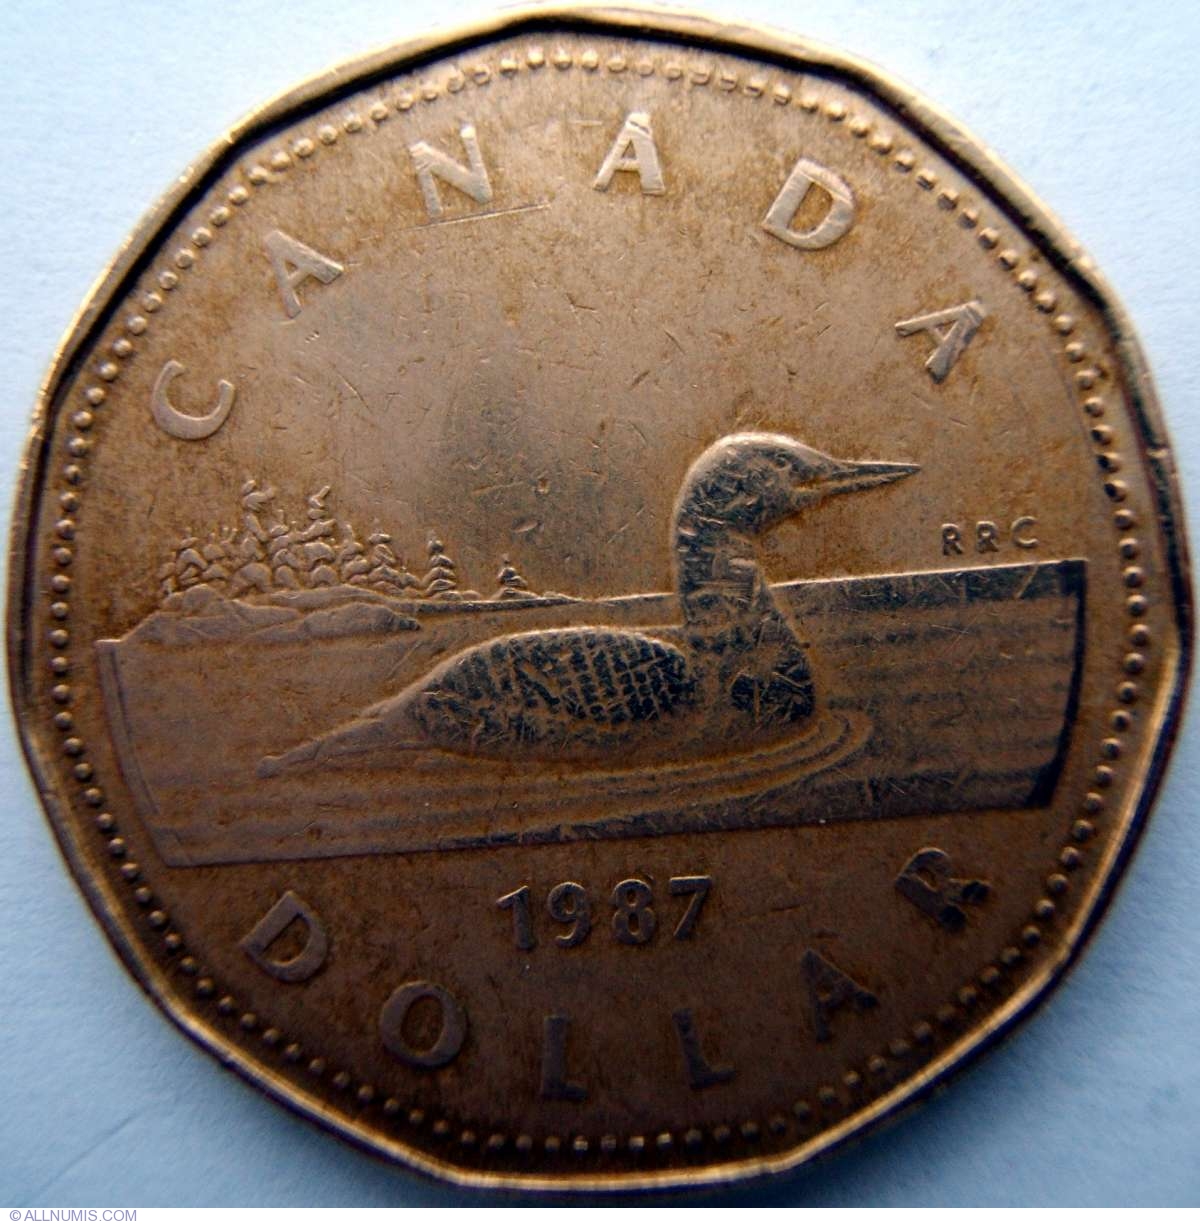 1987 dollar coin